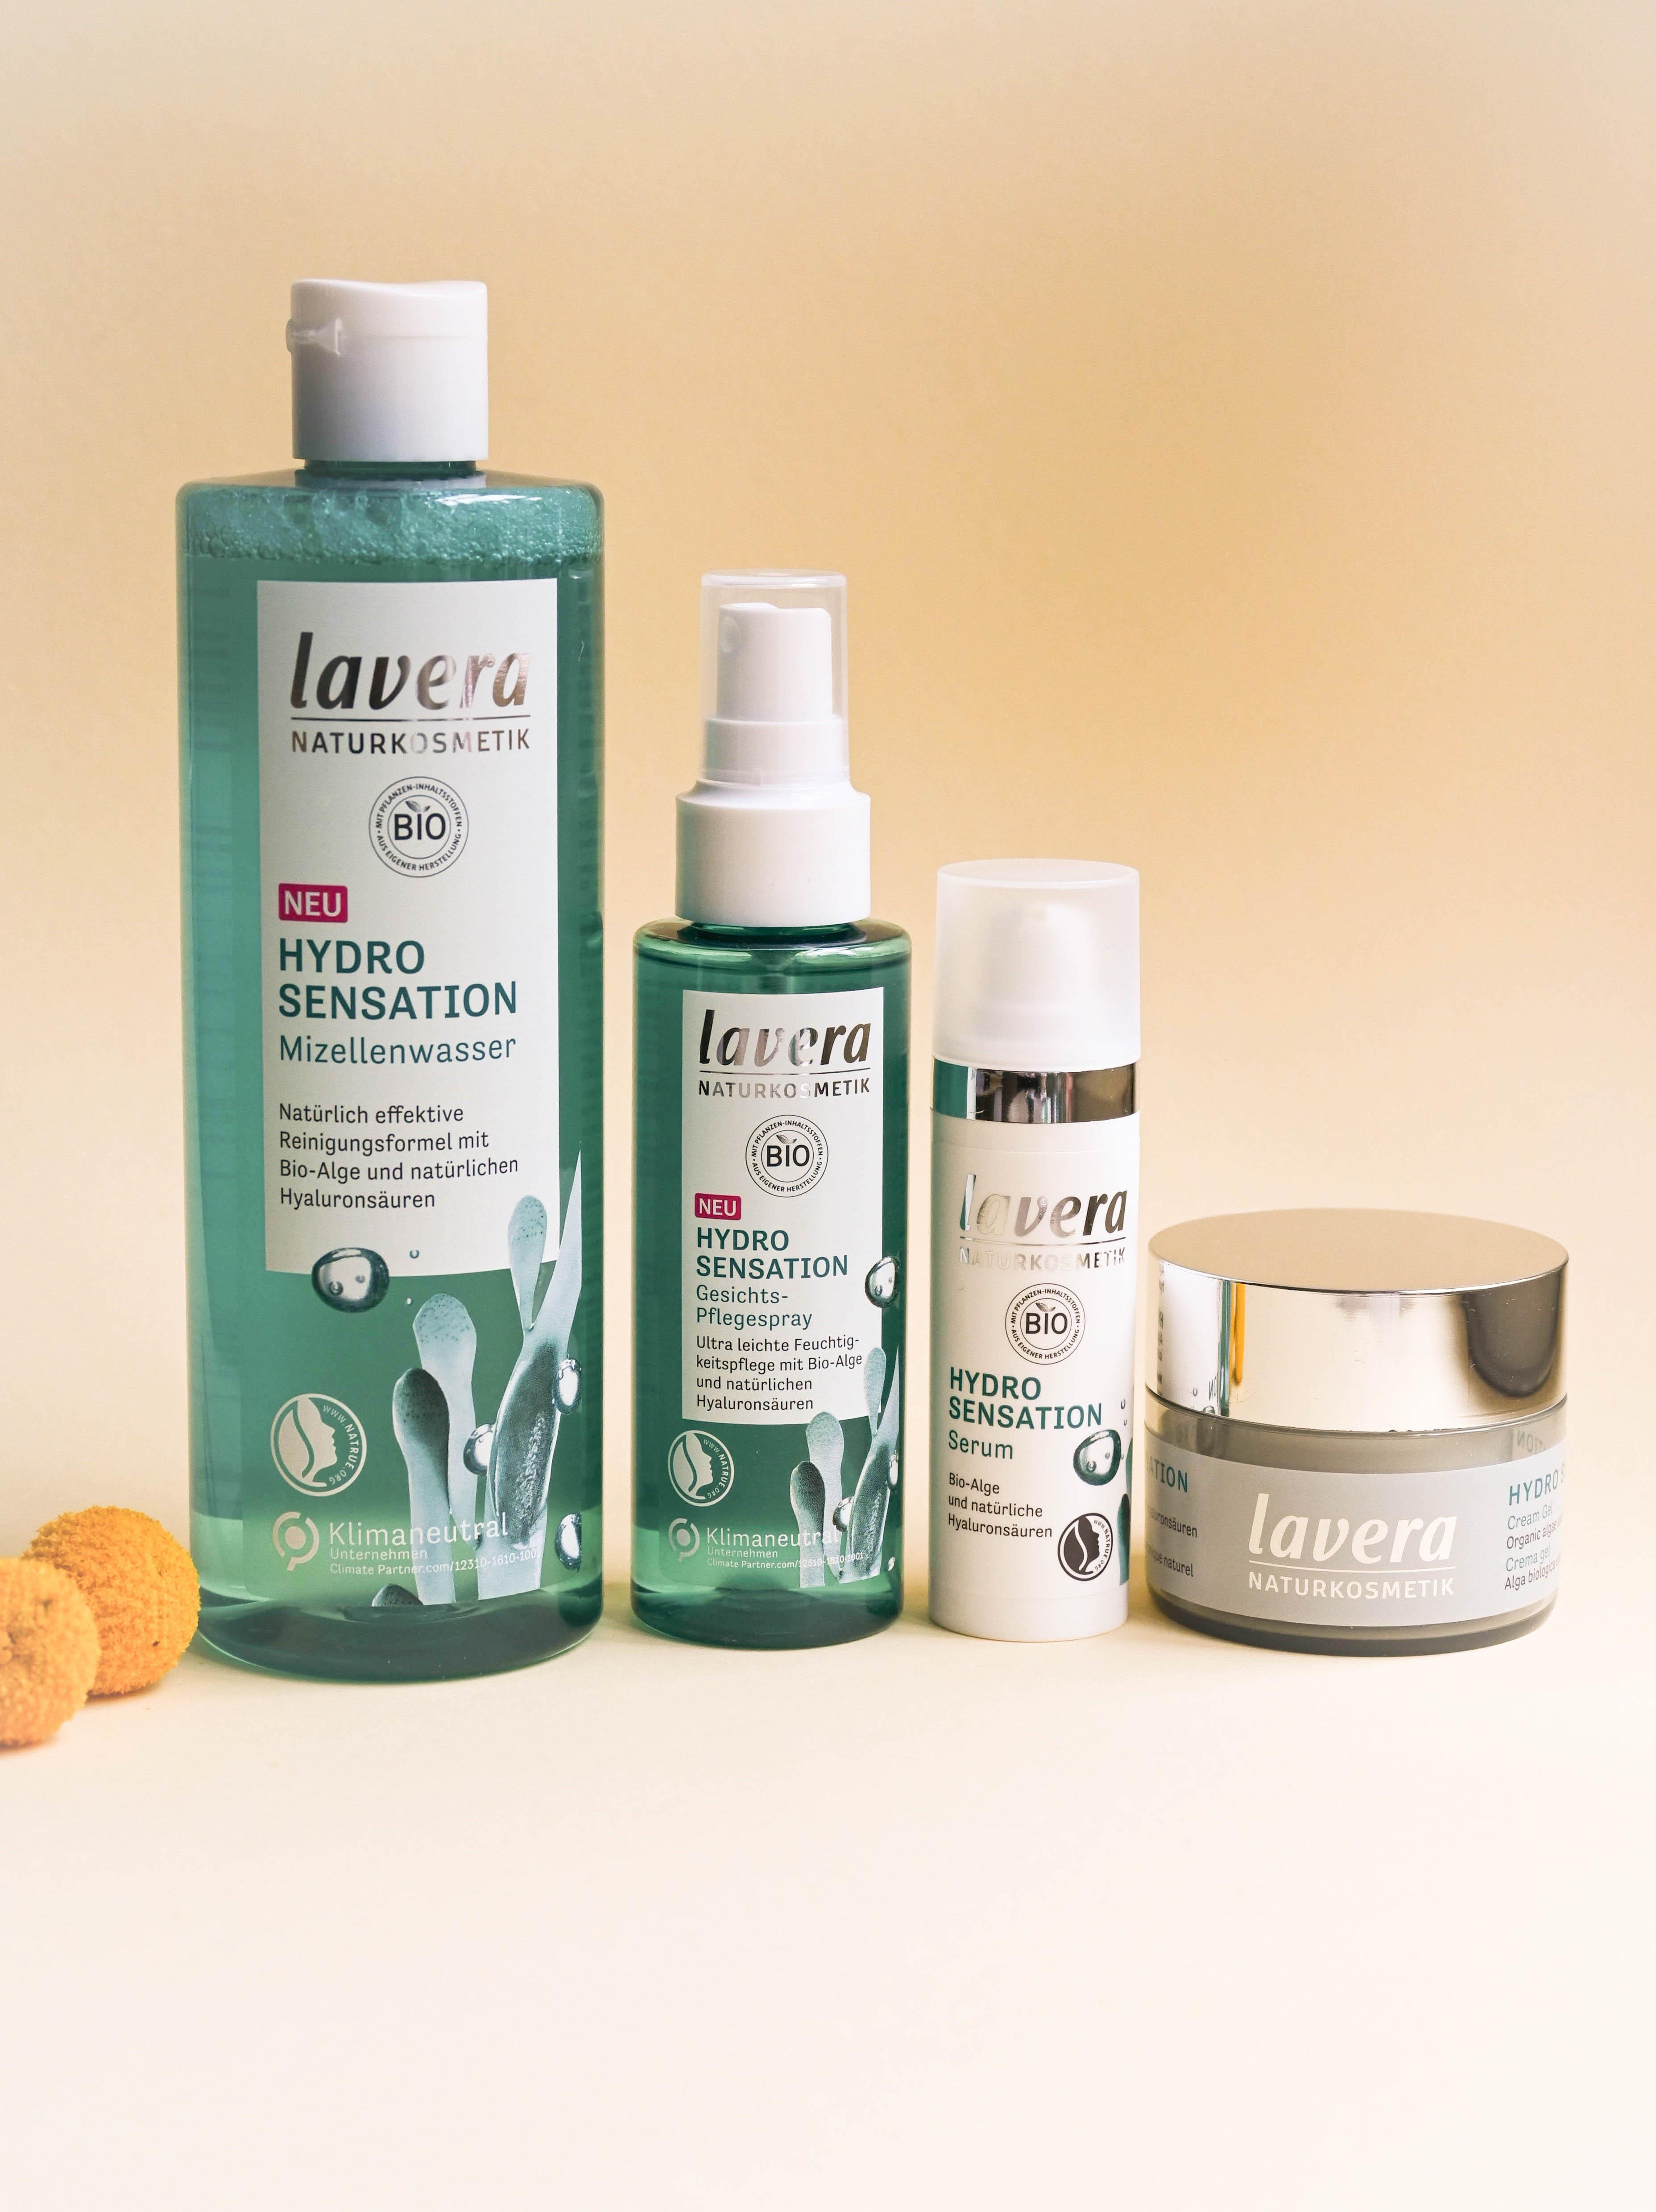 Meer davon: Die neuen „Hydro Sensation“ Produkte von Lavera erfrischen mit Bio-Alge #beautylieblinge #lavera